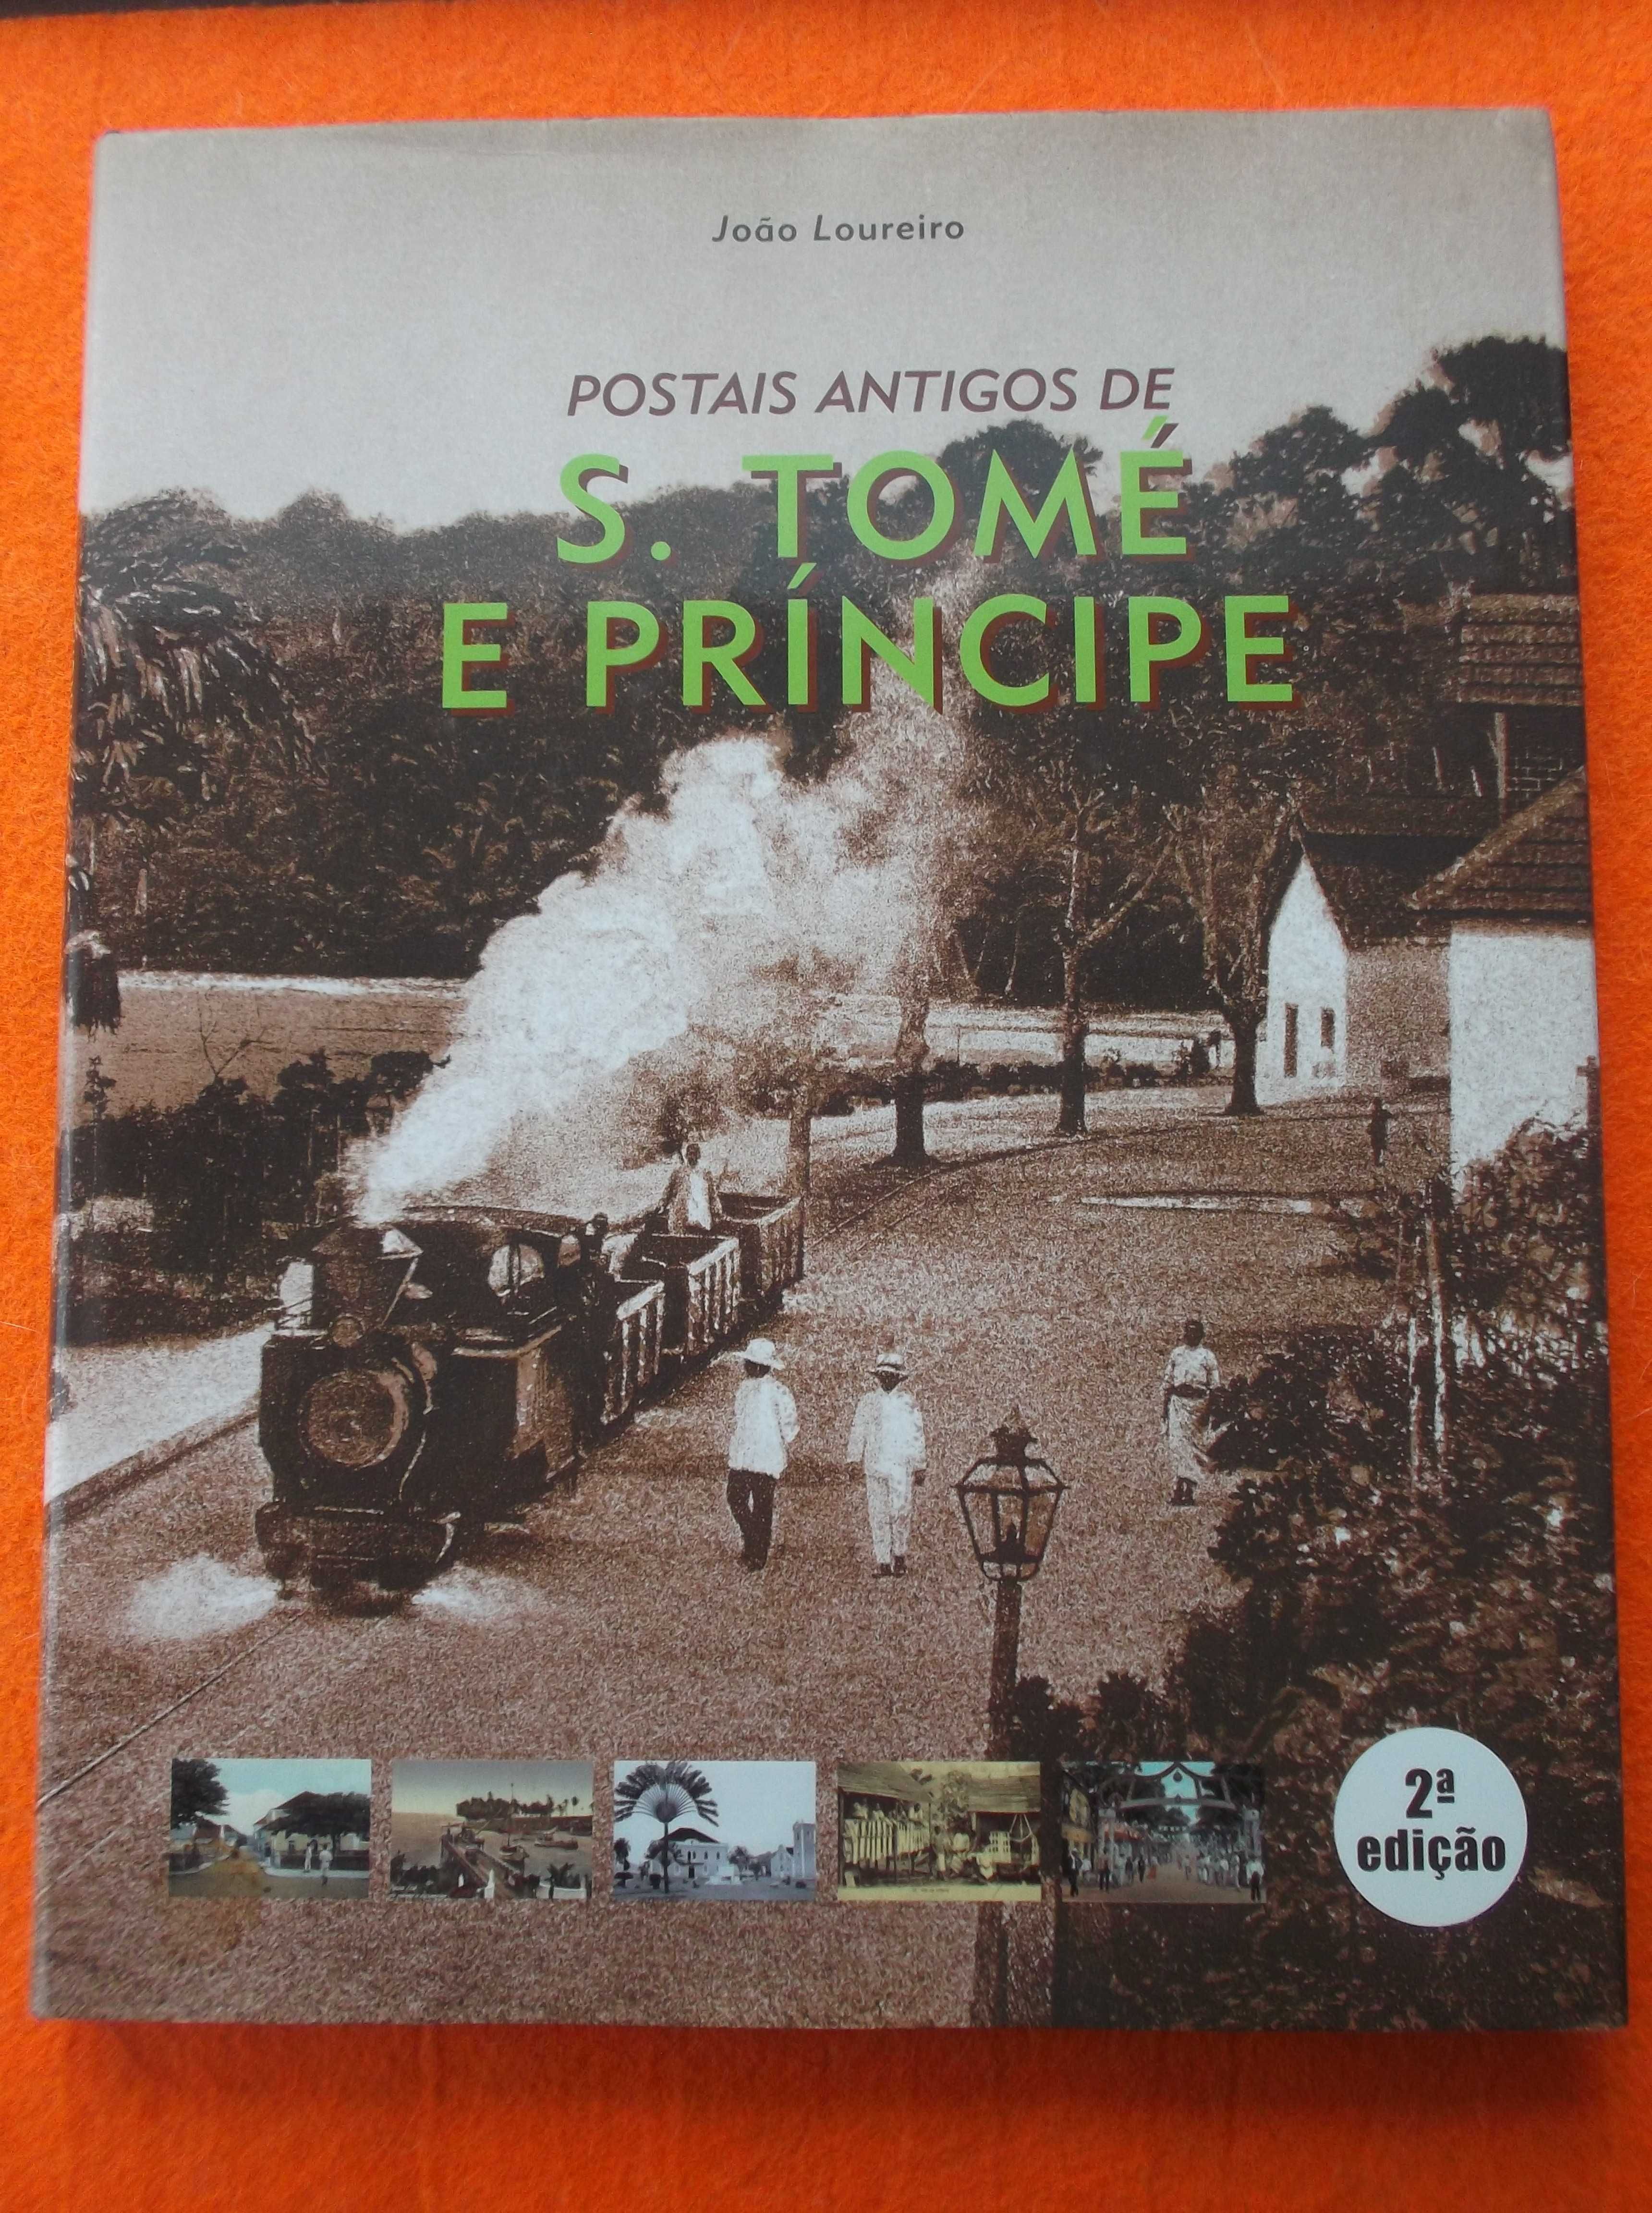 Postais Antigos de S. Tomé e Príncipe - João Loureiro